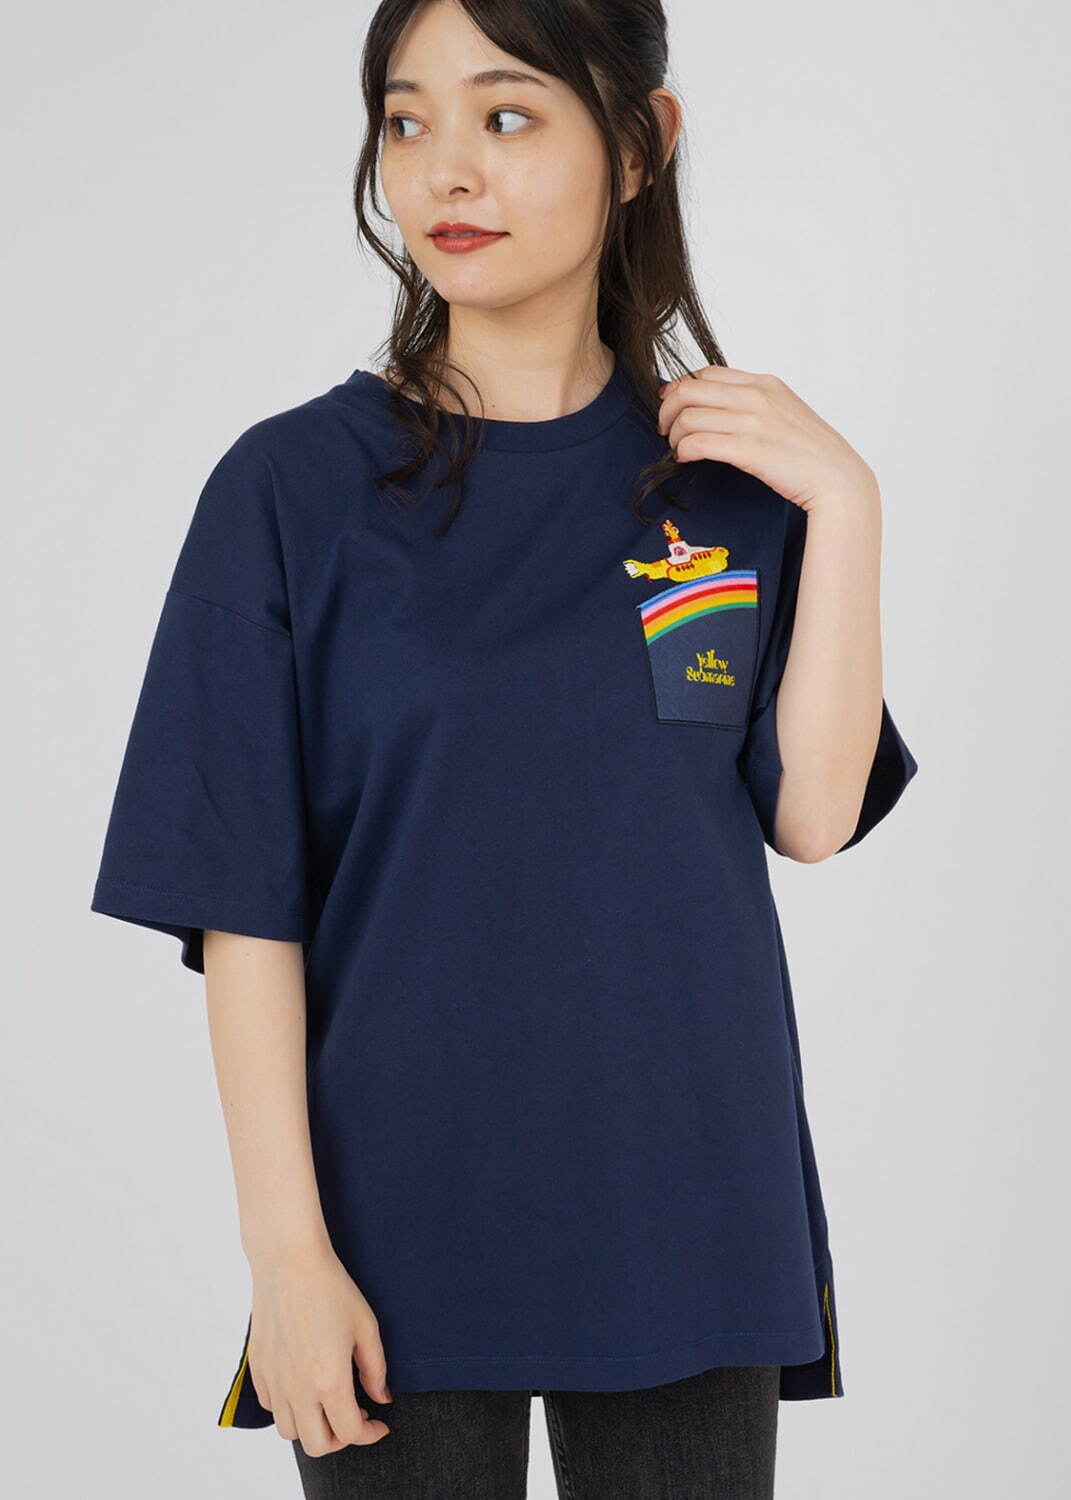 Tシャツ「イエロー・サブマリンレインボー」3,500円